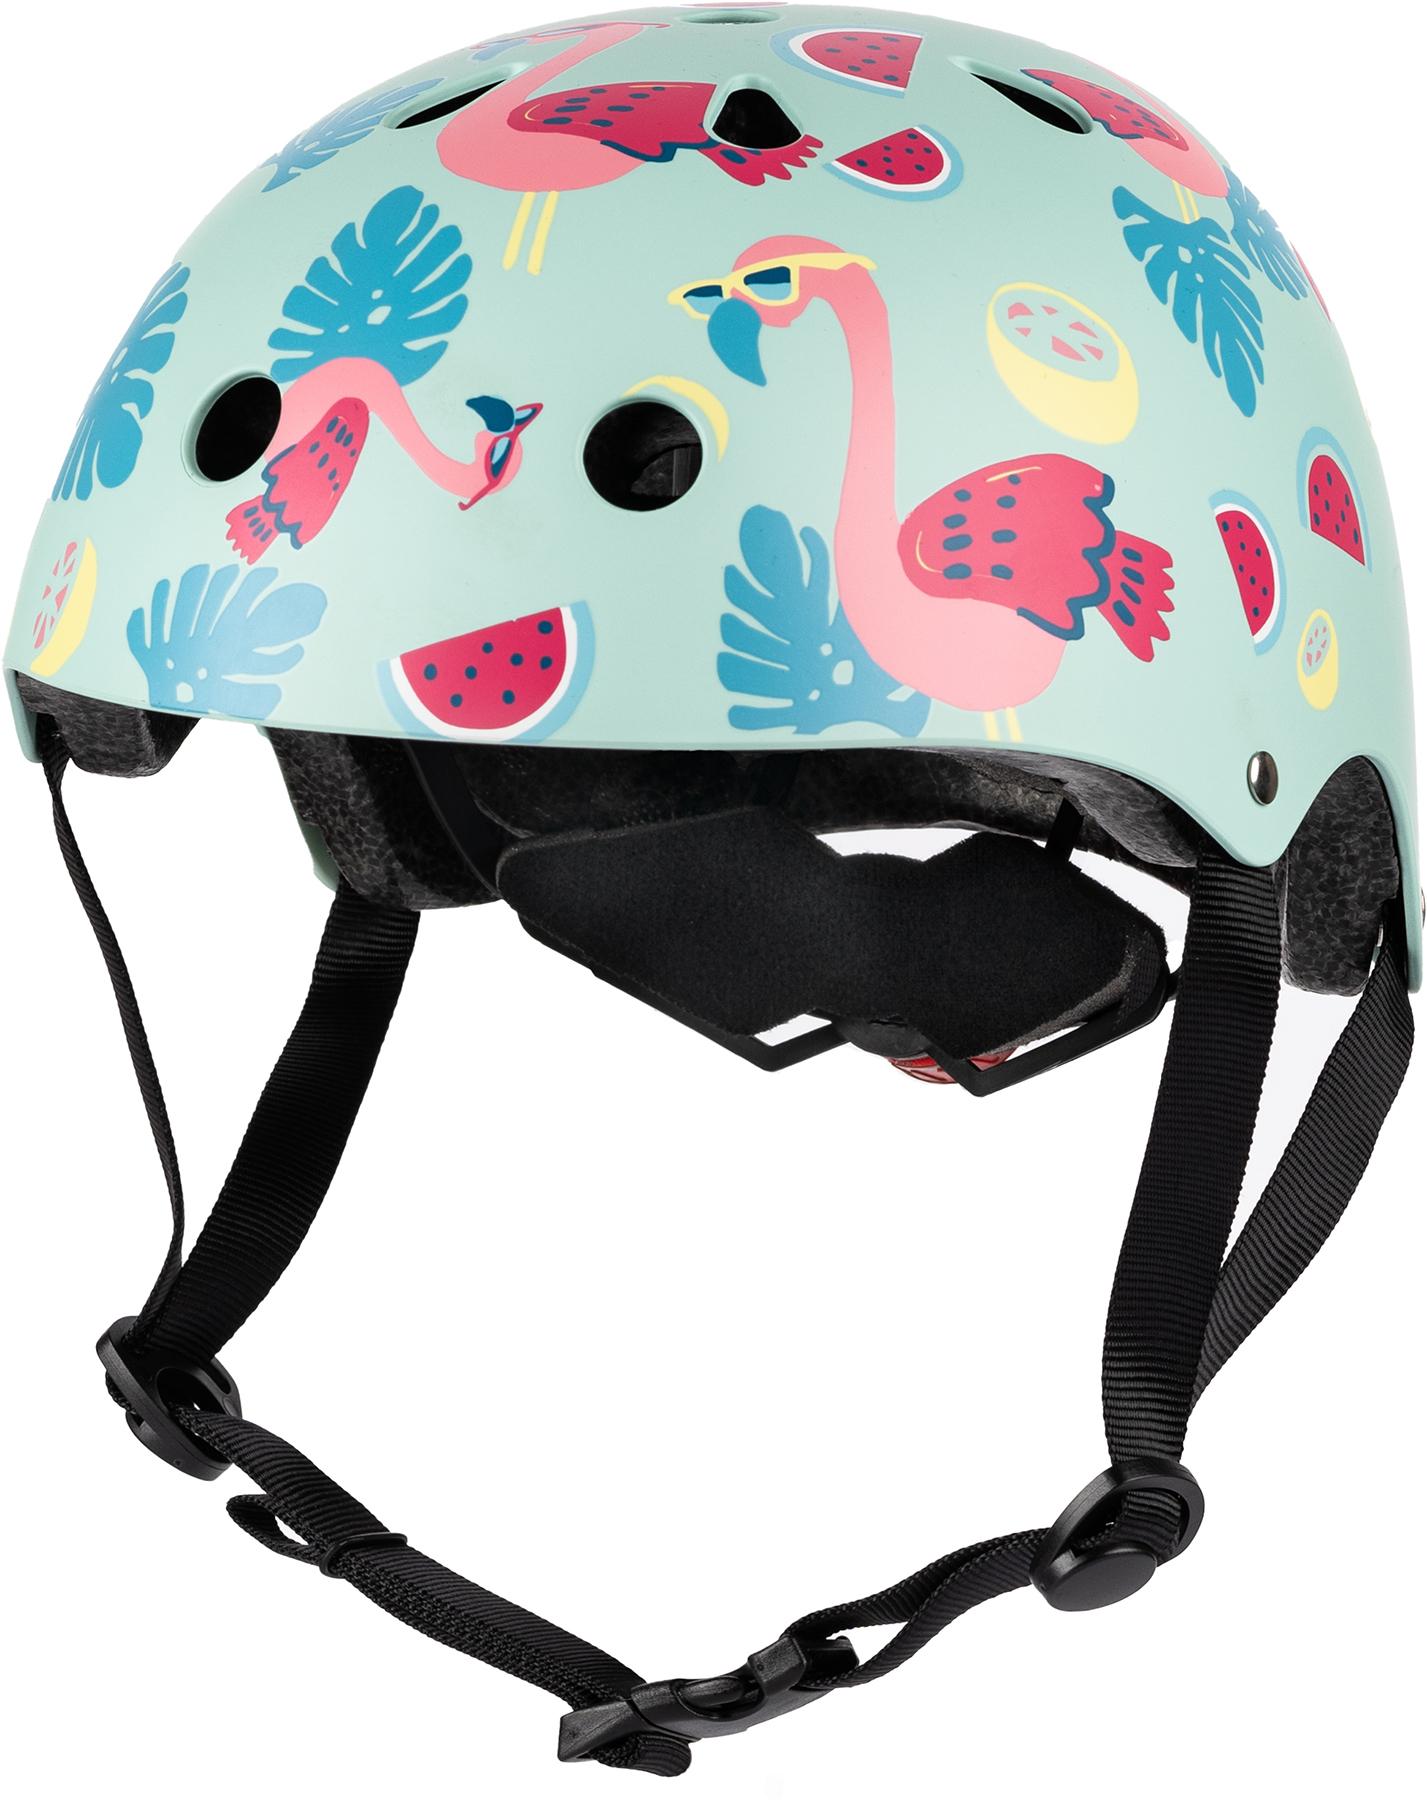 Hornit Kids Helmet - Flamingo